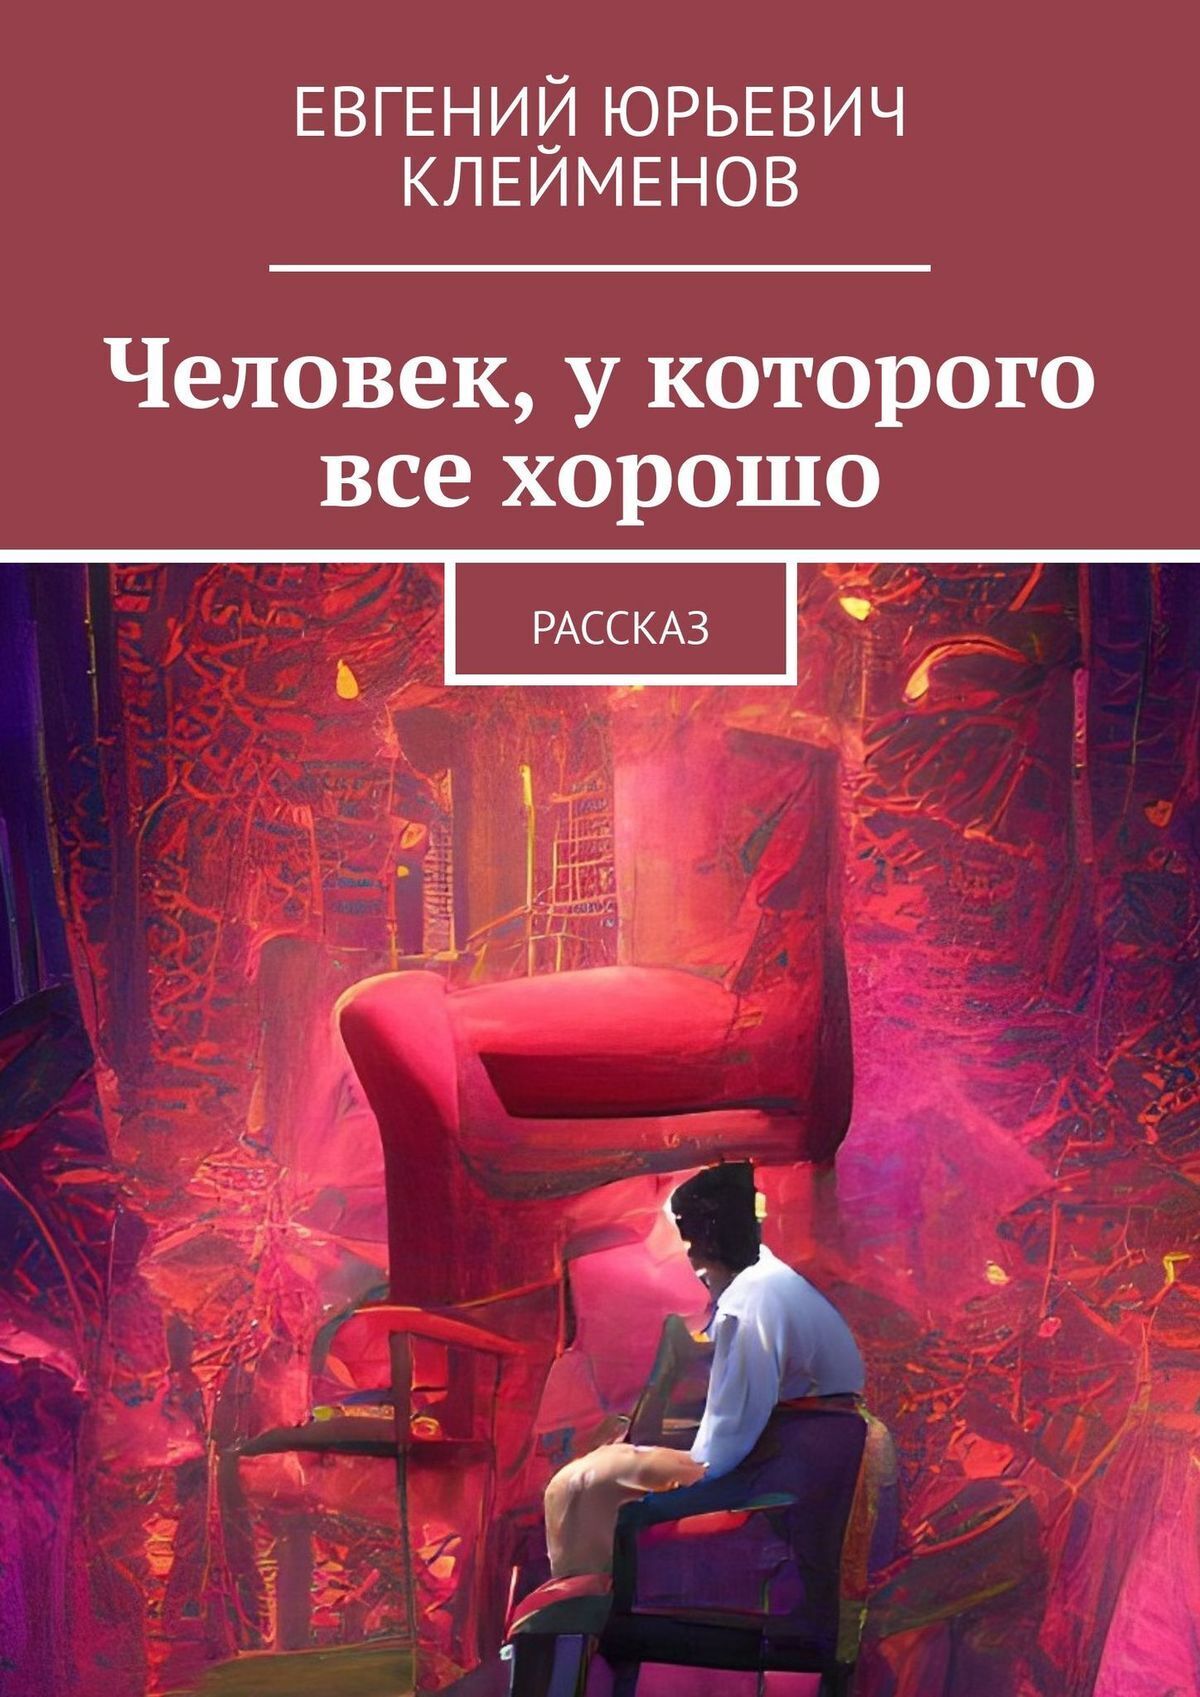 Парк Падших Людей, Евгений Юрьевич Клейменов – скачать книгу fb2, epub, pdf  на ЛитРес